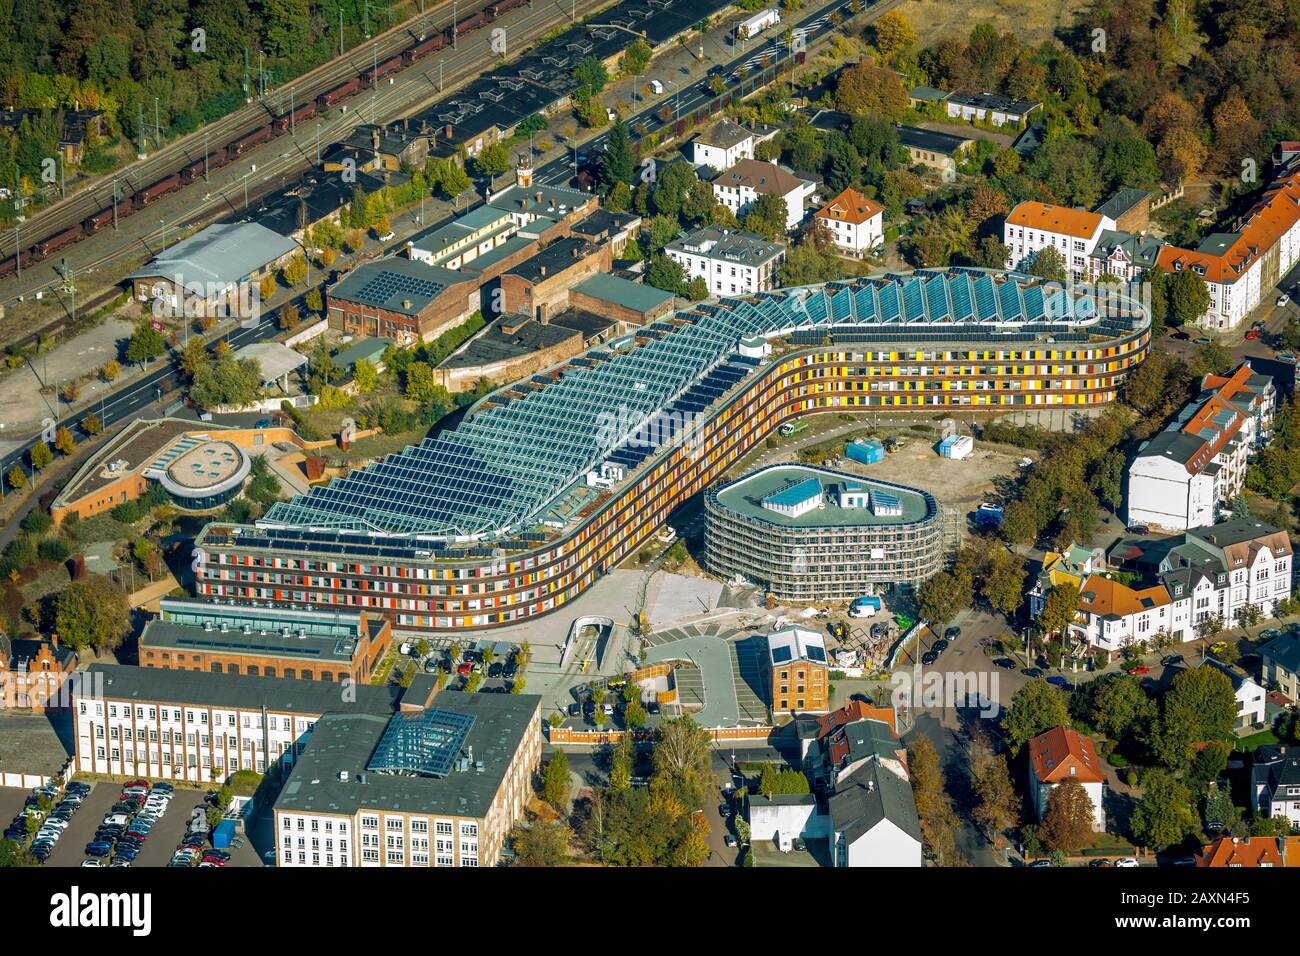 Foto aerea, ufficio federale dell'ambiente, Wörlitzer Patz, stazione ferroviaria di Wörlitzer, Unruhstrasse, Dessau, distretto Goslar, Sassonia-Anhalt, Germania, Foto Stock